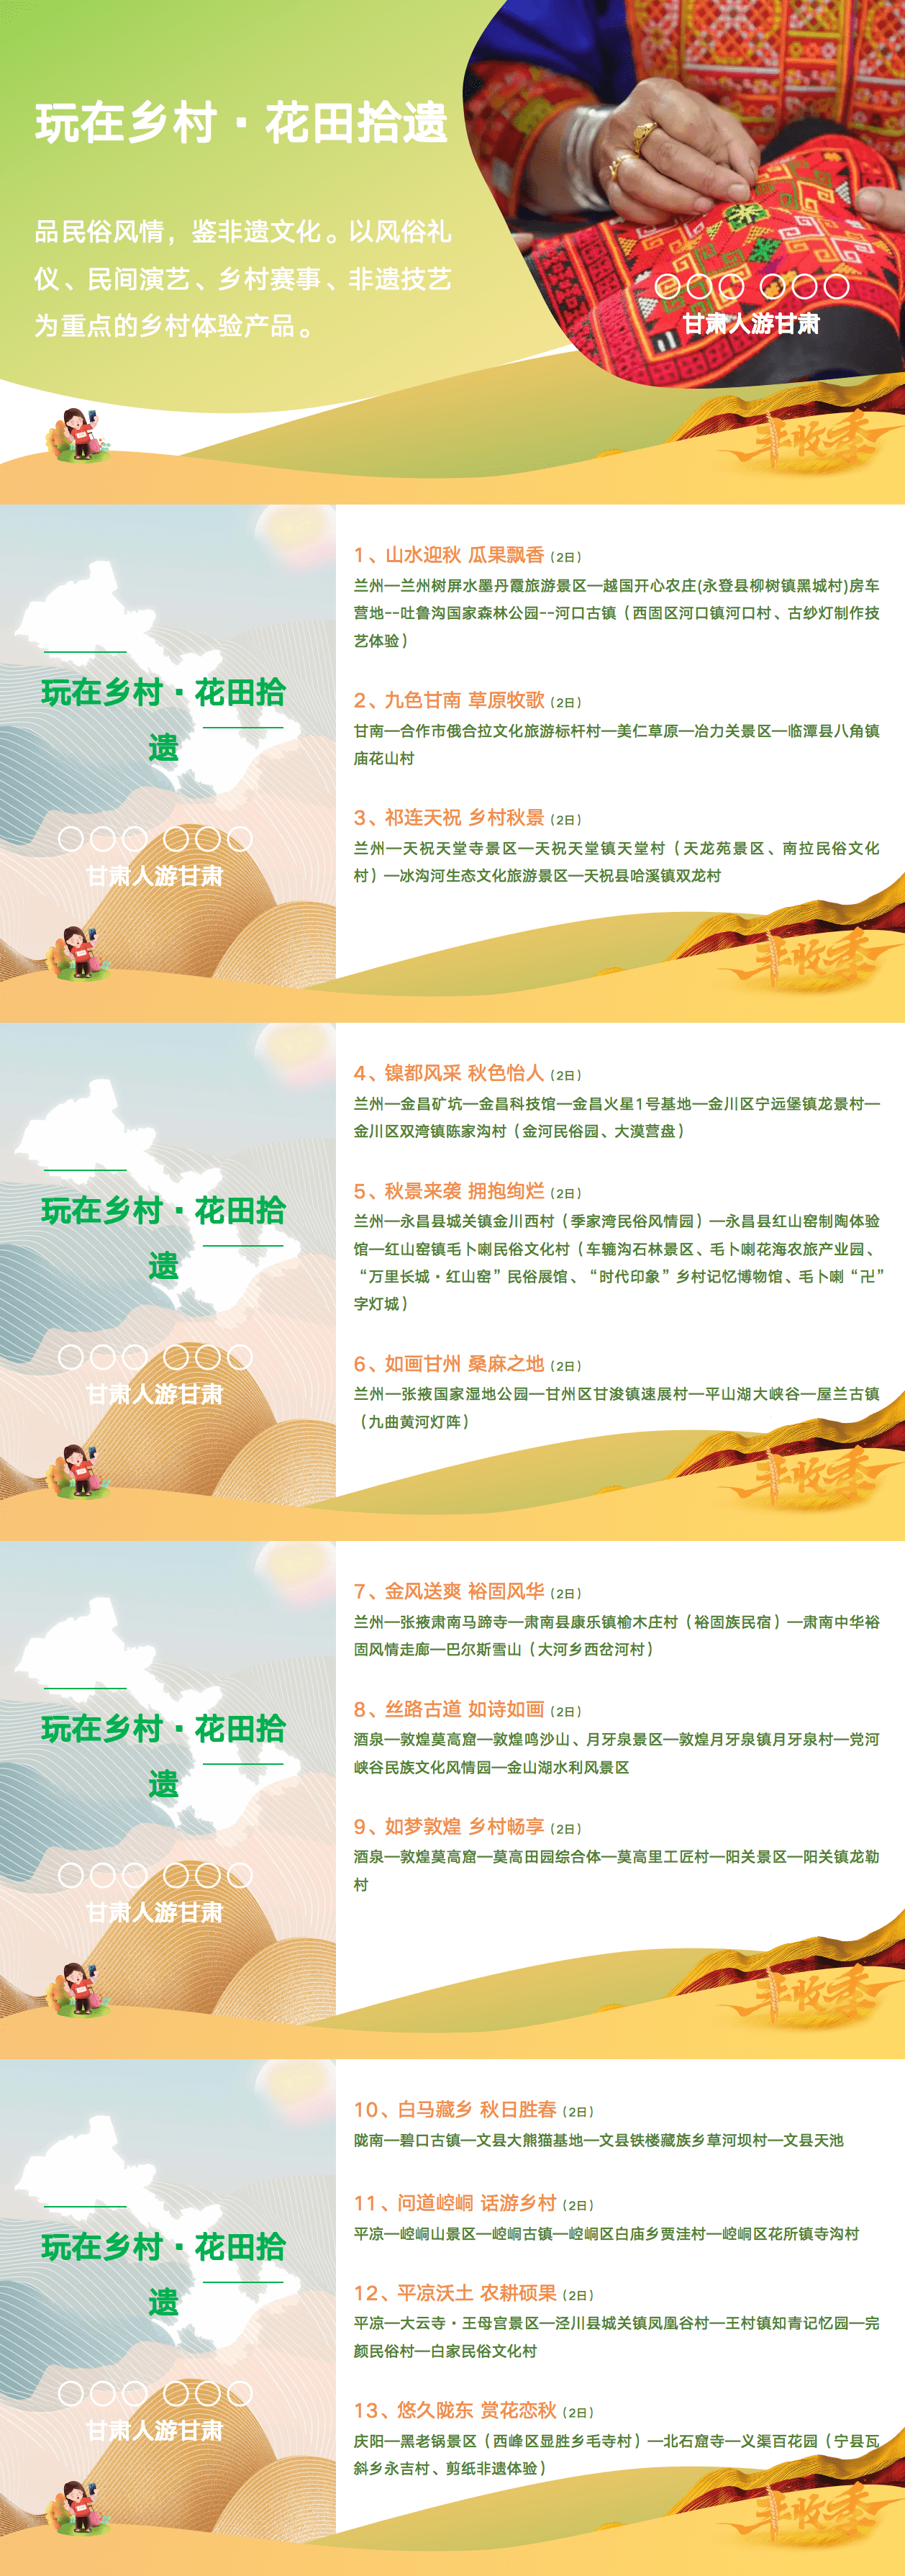 甘肃文旅厅推出61条秋季乡村旅游精品线路